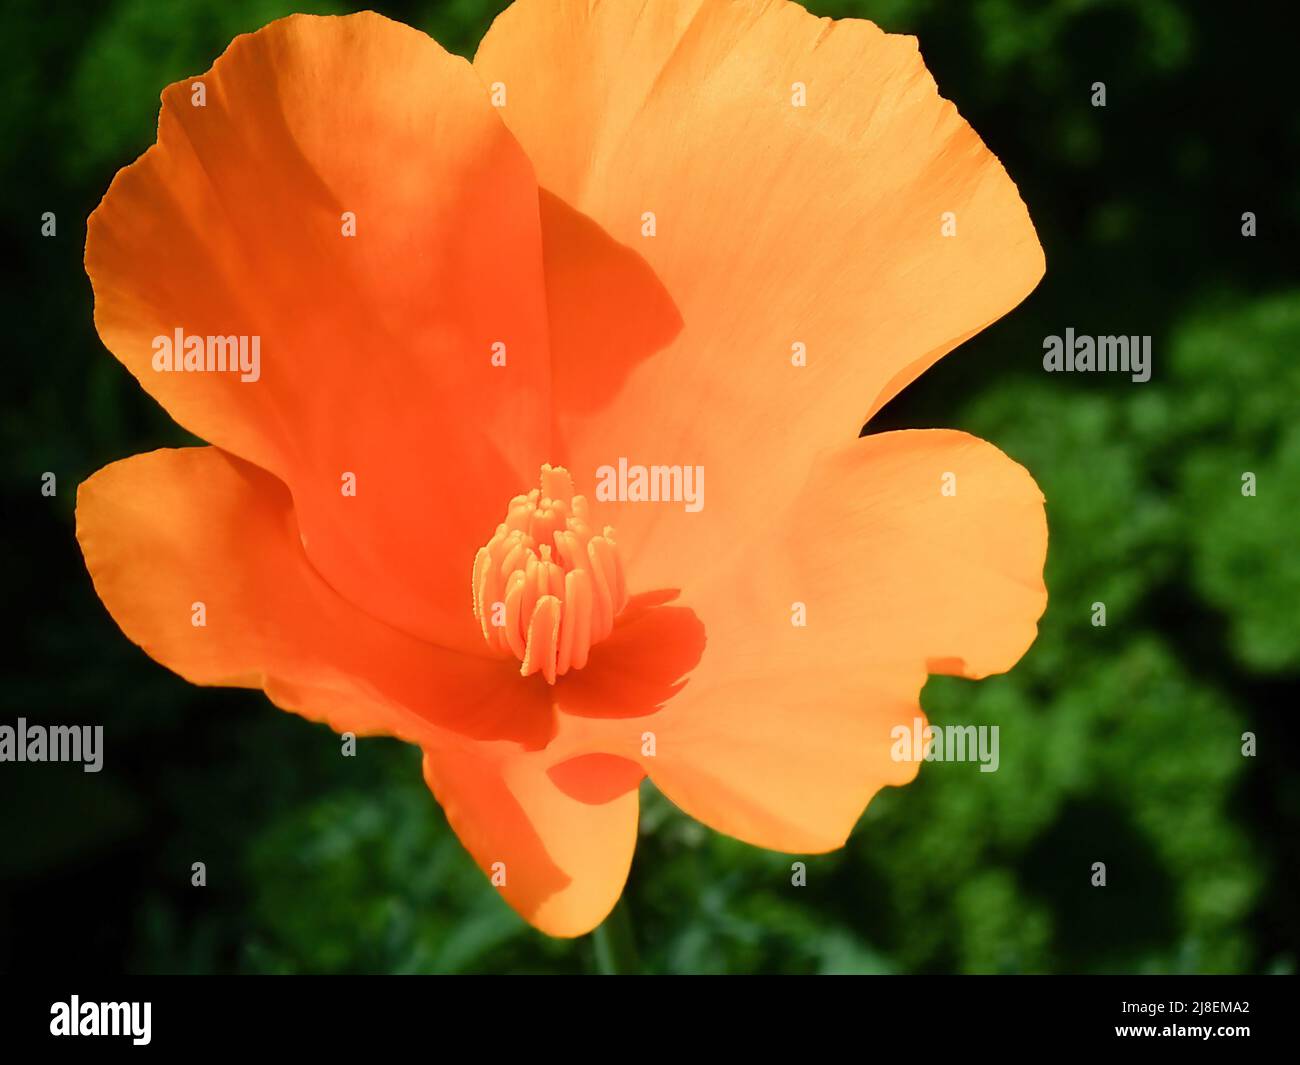 Orange Flower in a grden Stock Photo